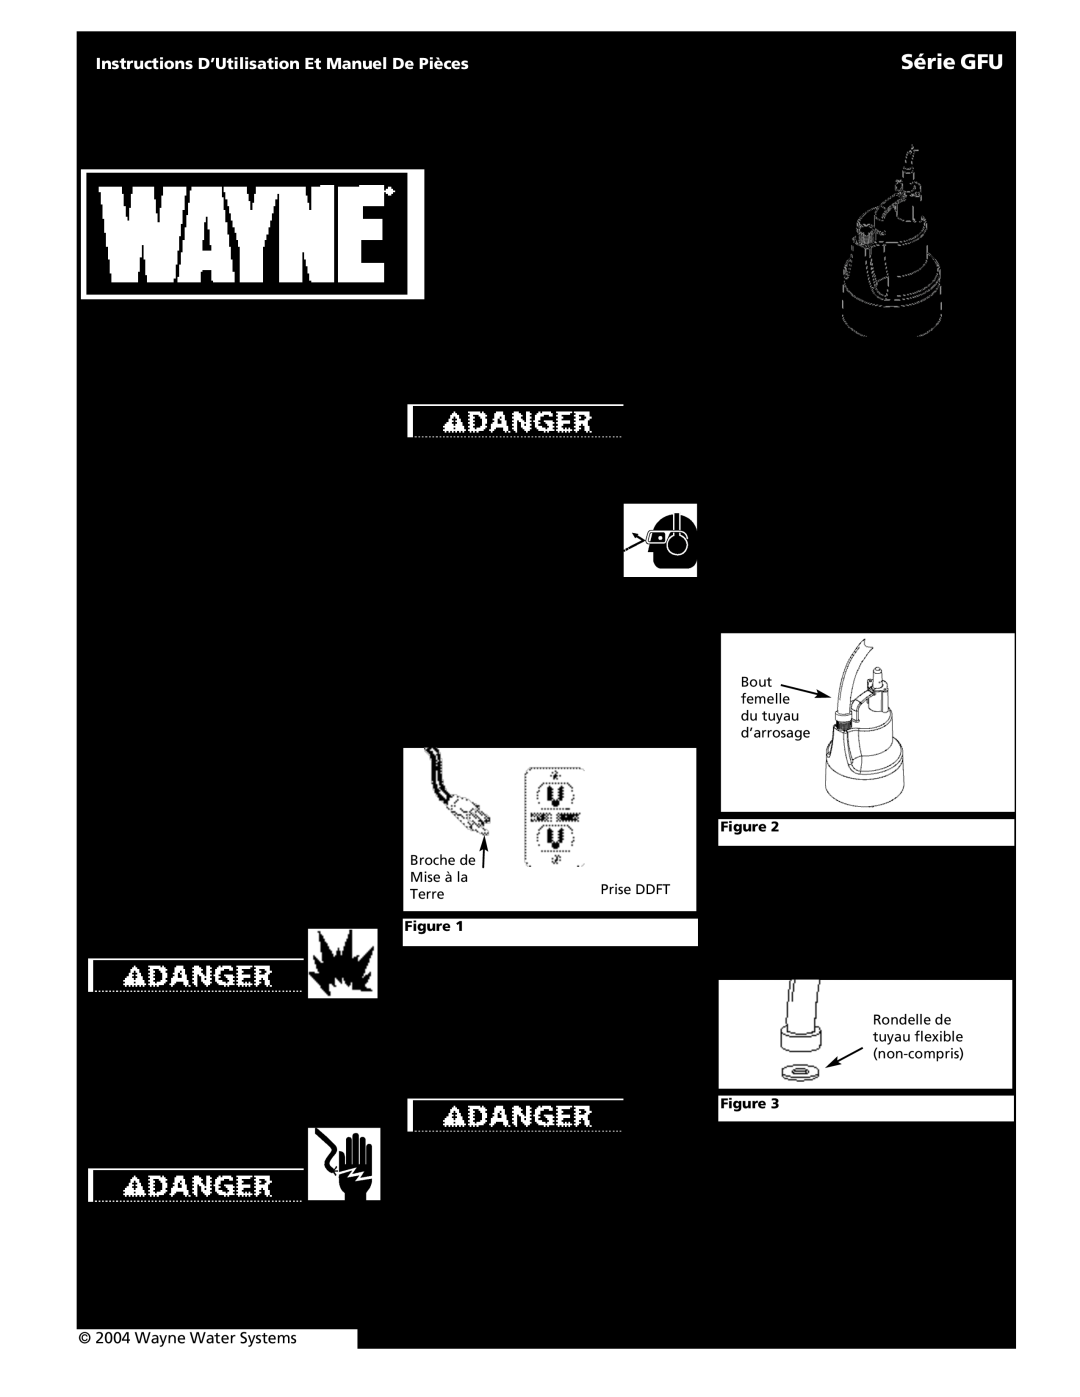 Wayne 320702-001 Pompe Immergée Tout Usage, Série GFU, Déballage, Information de Sécurité Très Importante, Description 